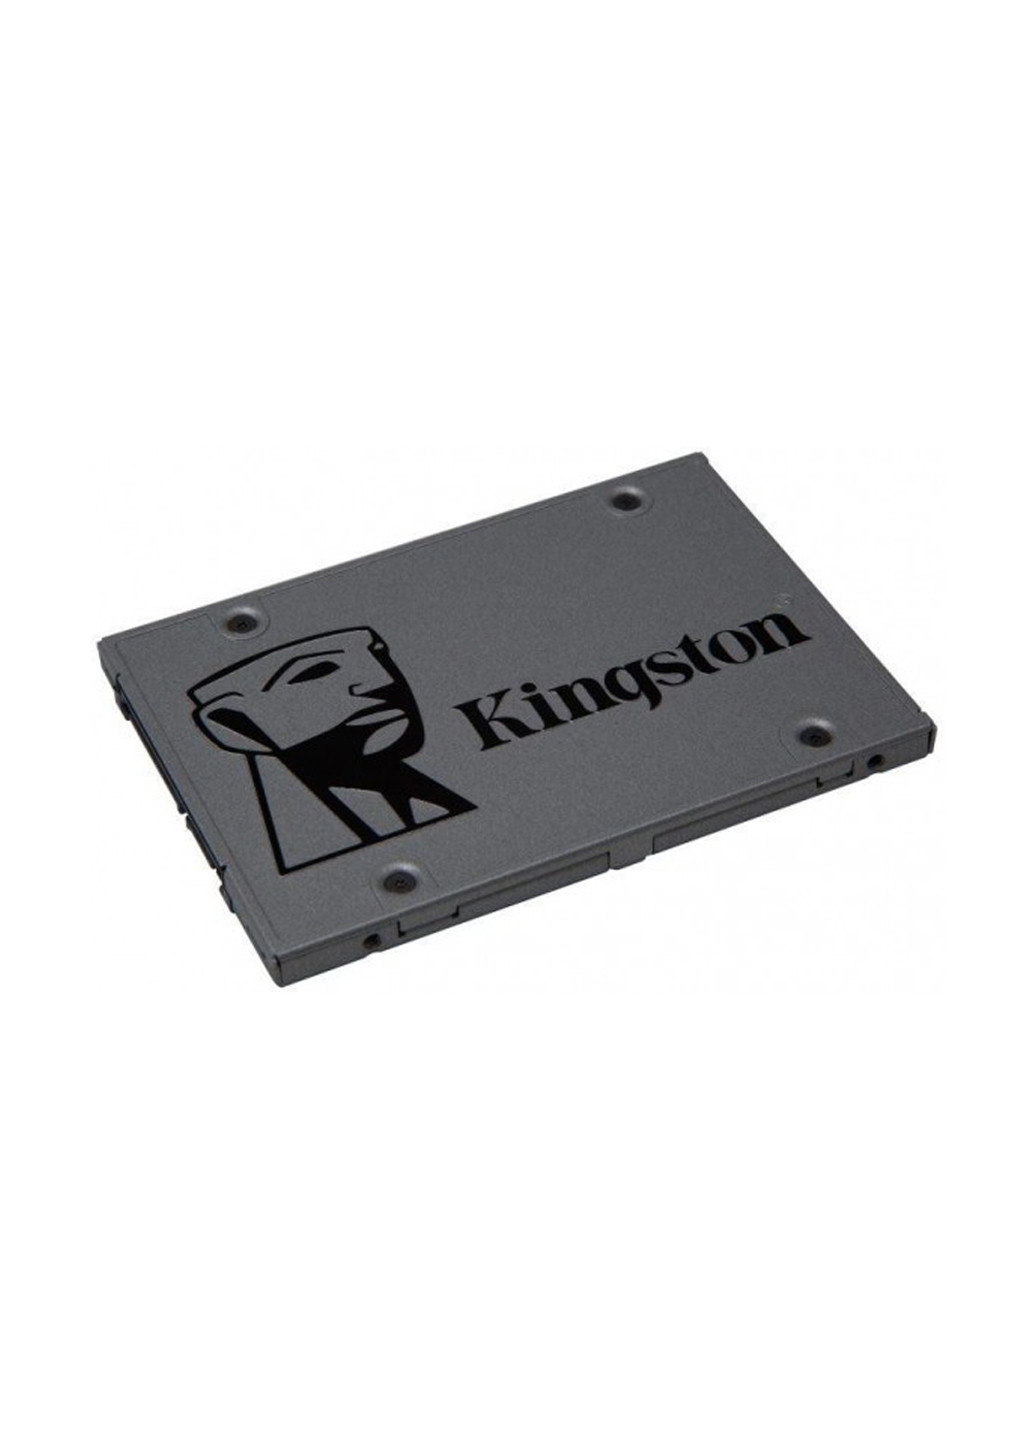 Внутренний SSD UV500 120GB 2.5" SATAIII 3D NAND TLC (SUV500/120G) Kingston внутренний ssd kingston uv500 120gb 2.5" sataiii 3d nand tlc (suv500/120g) (136893992)